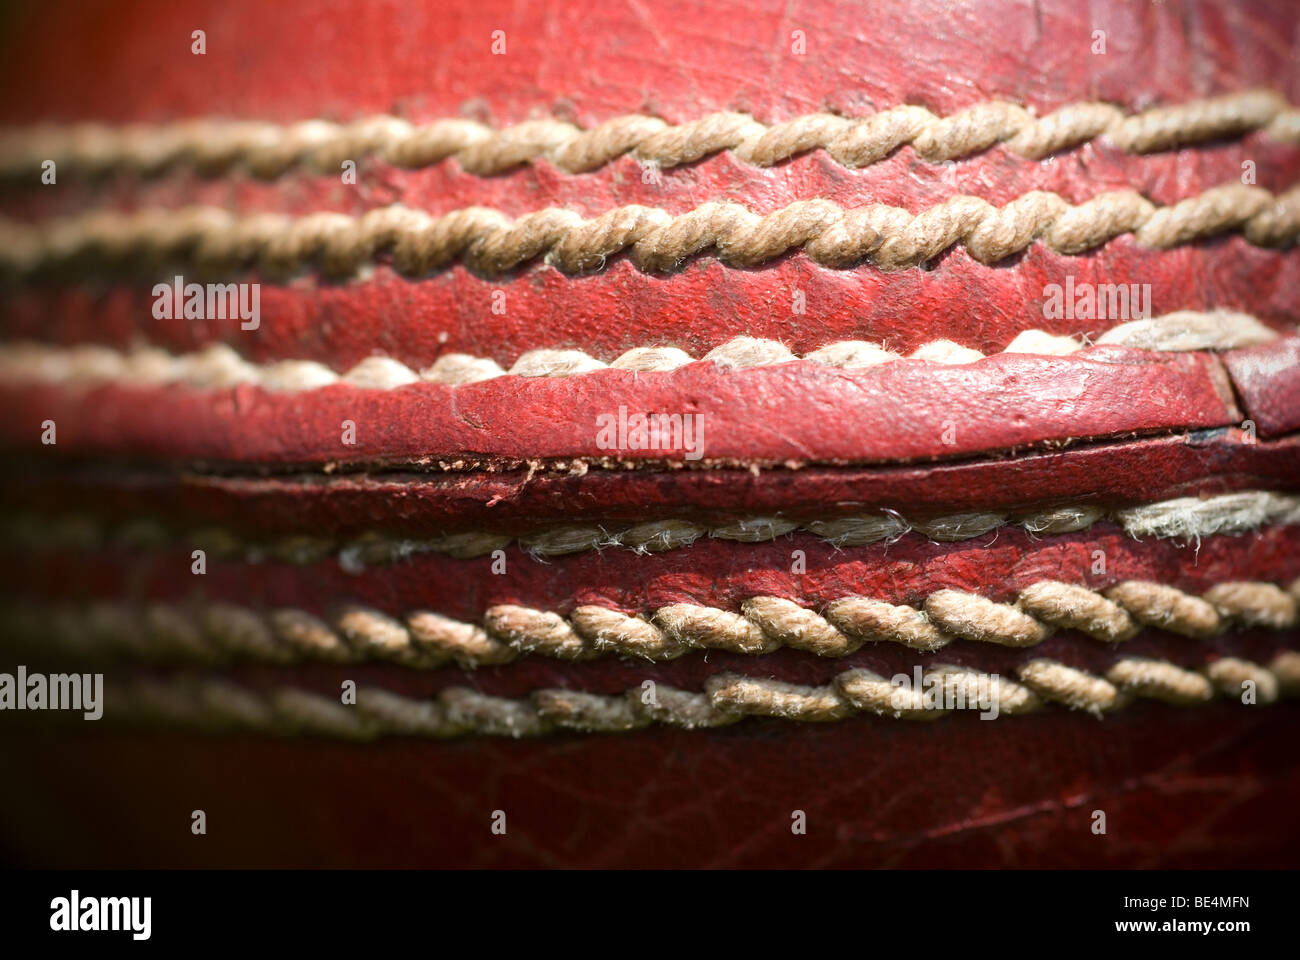 La couture d'une balle de cricket Photo Stock - Alamy